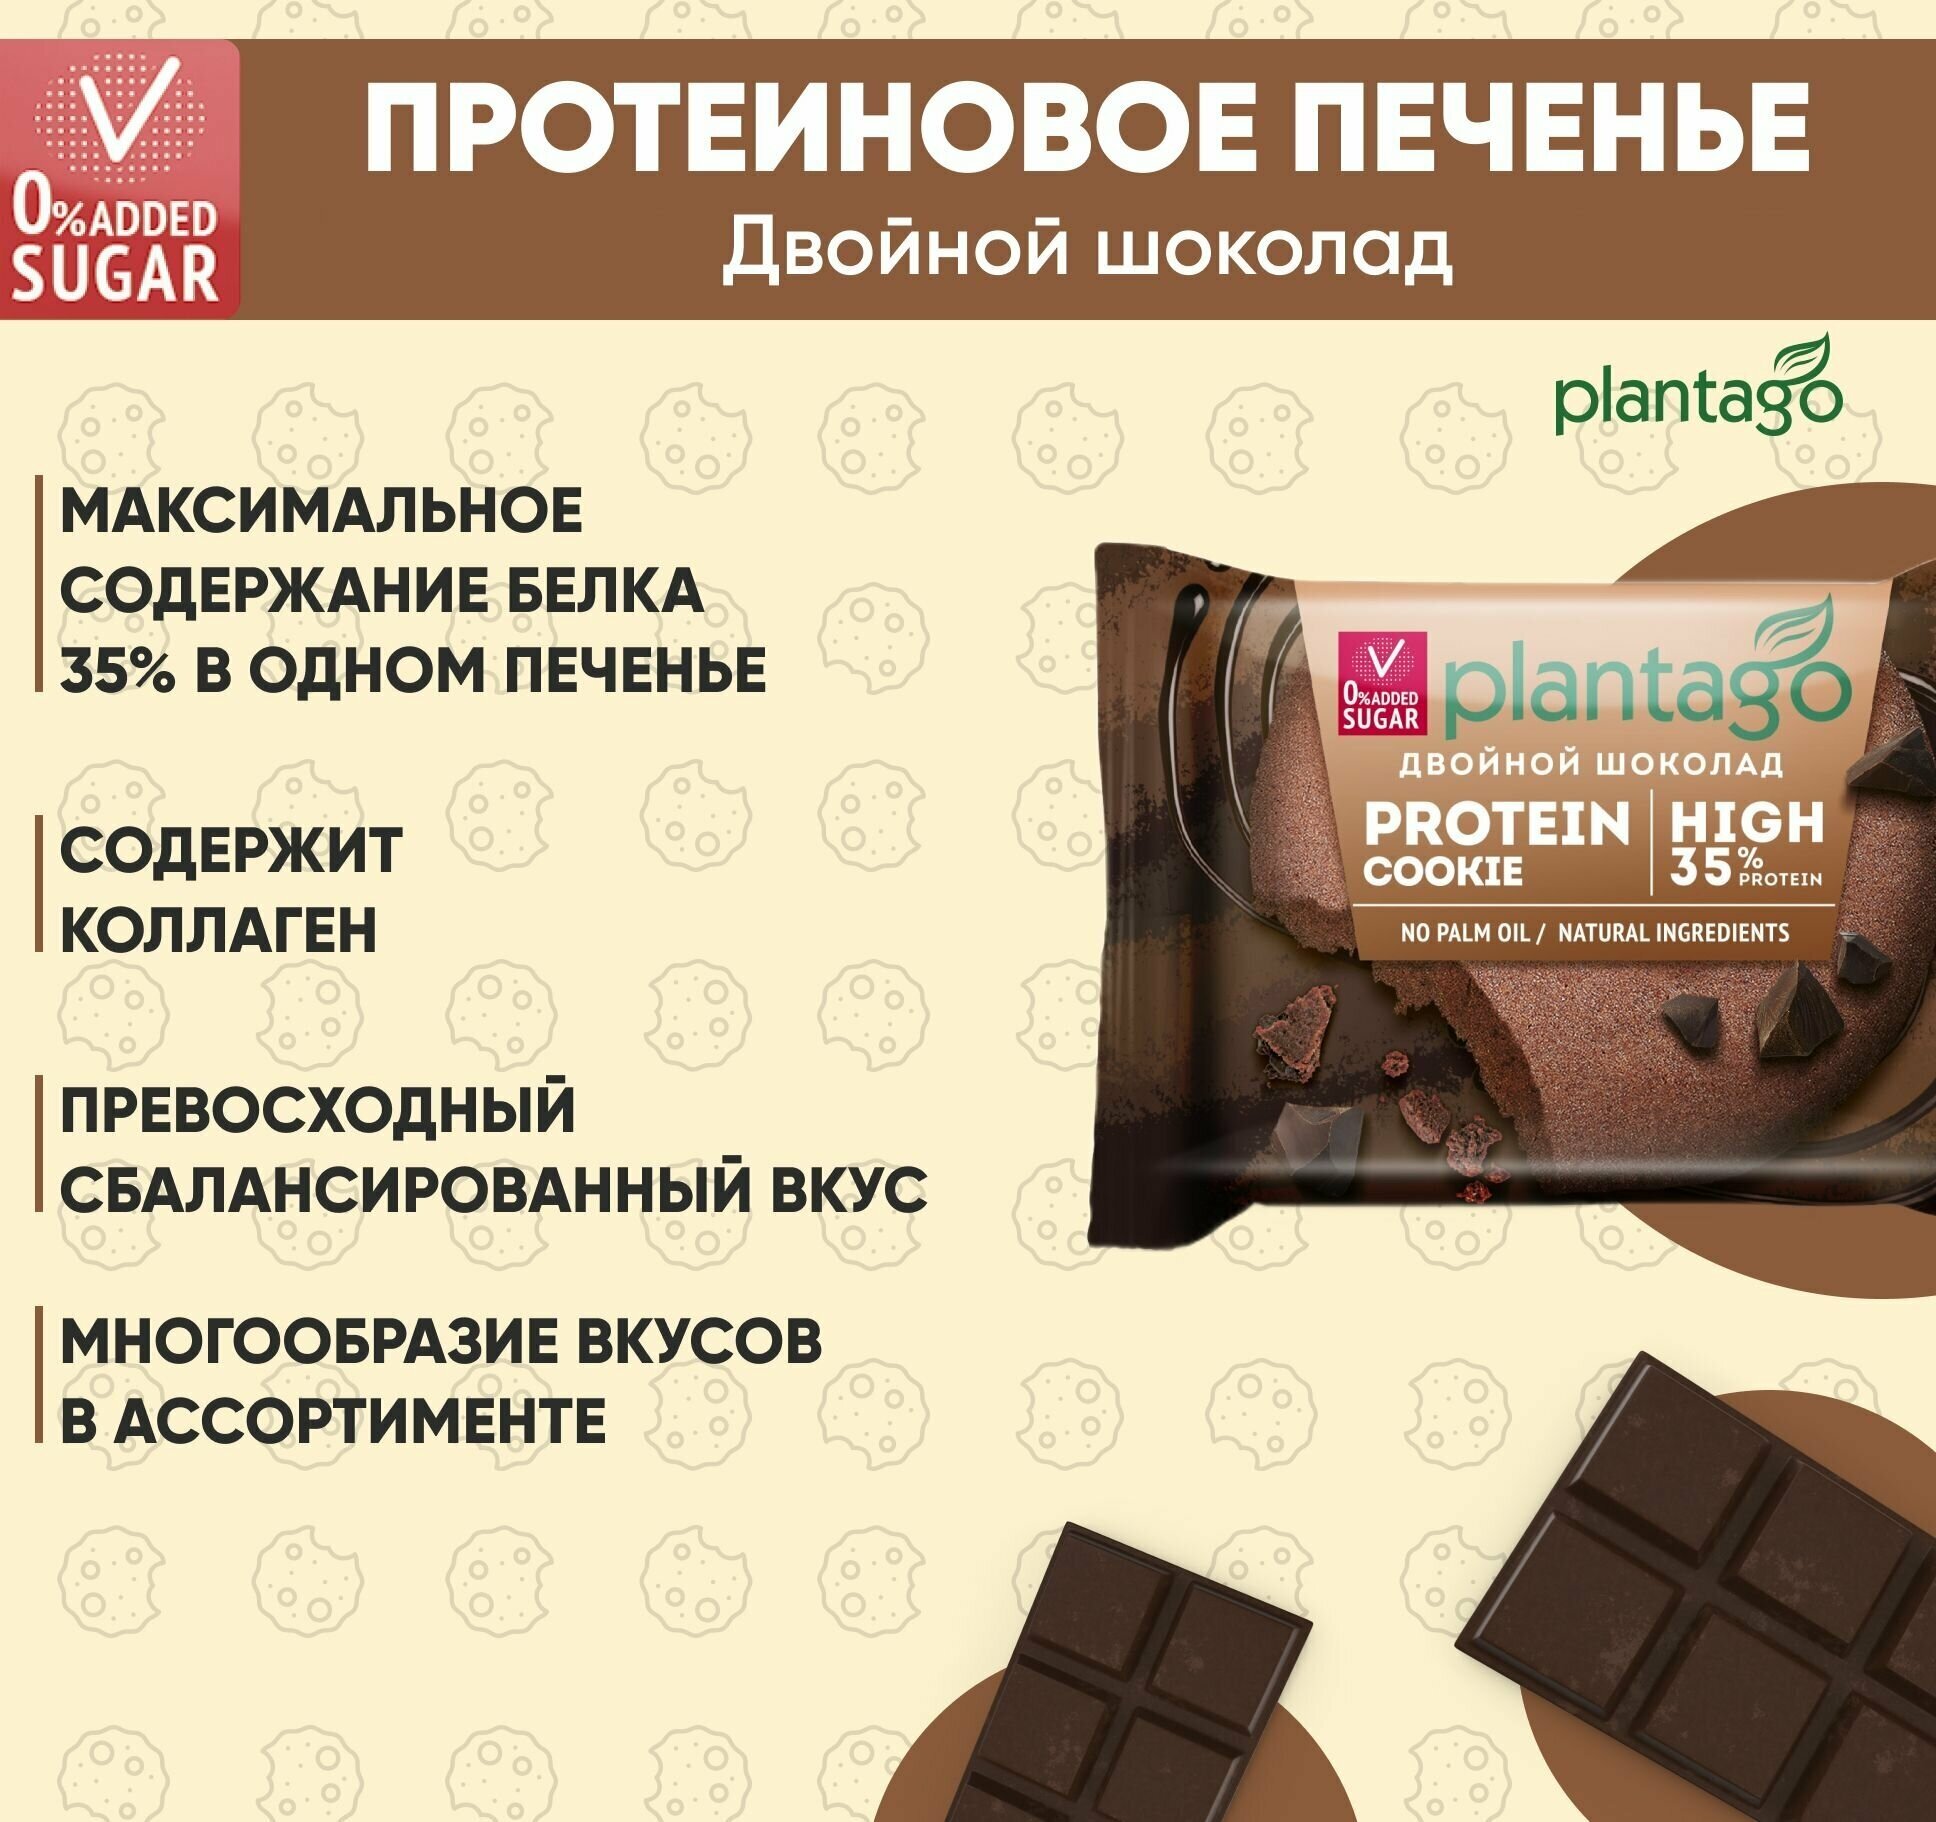 Plantago Печенье протеиновое с высоким содержанием белка Protein Cookie со вкусом Двойной шоколад 35%, 12 шт. по 40 гр / Плантаго